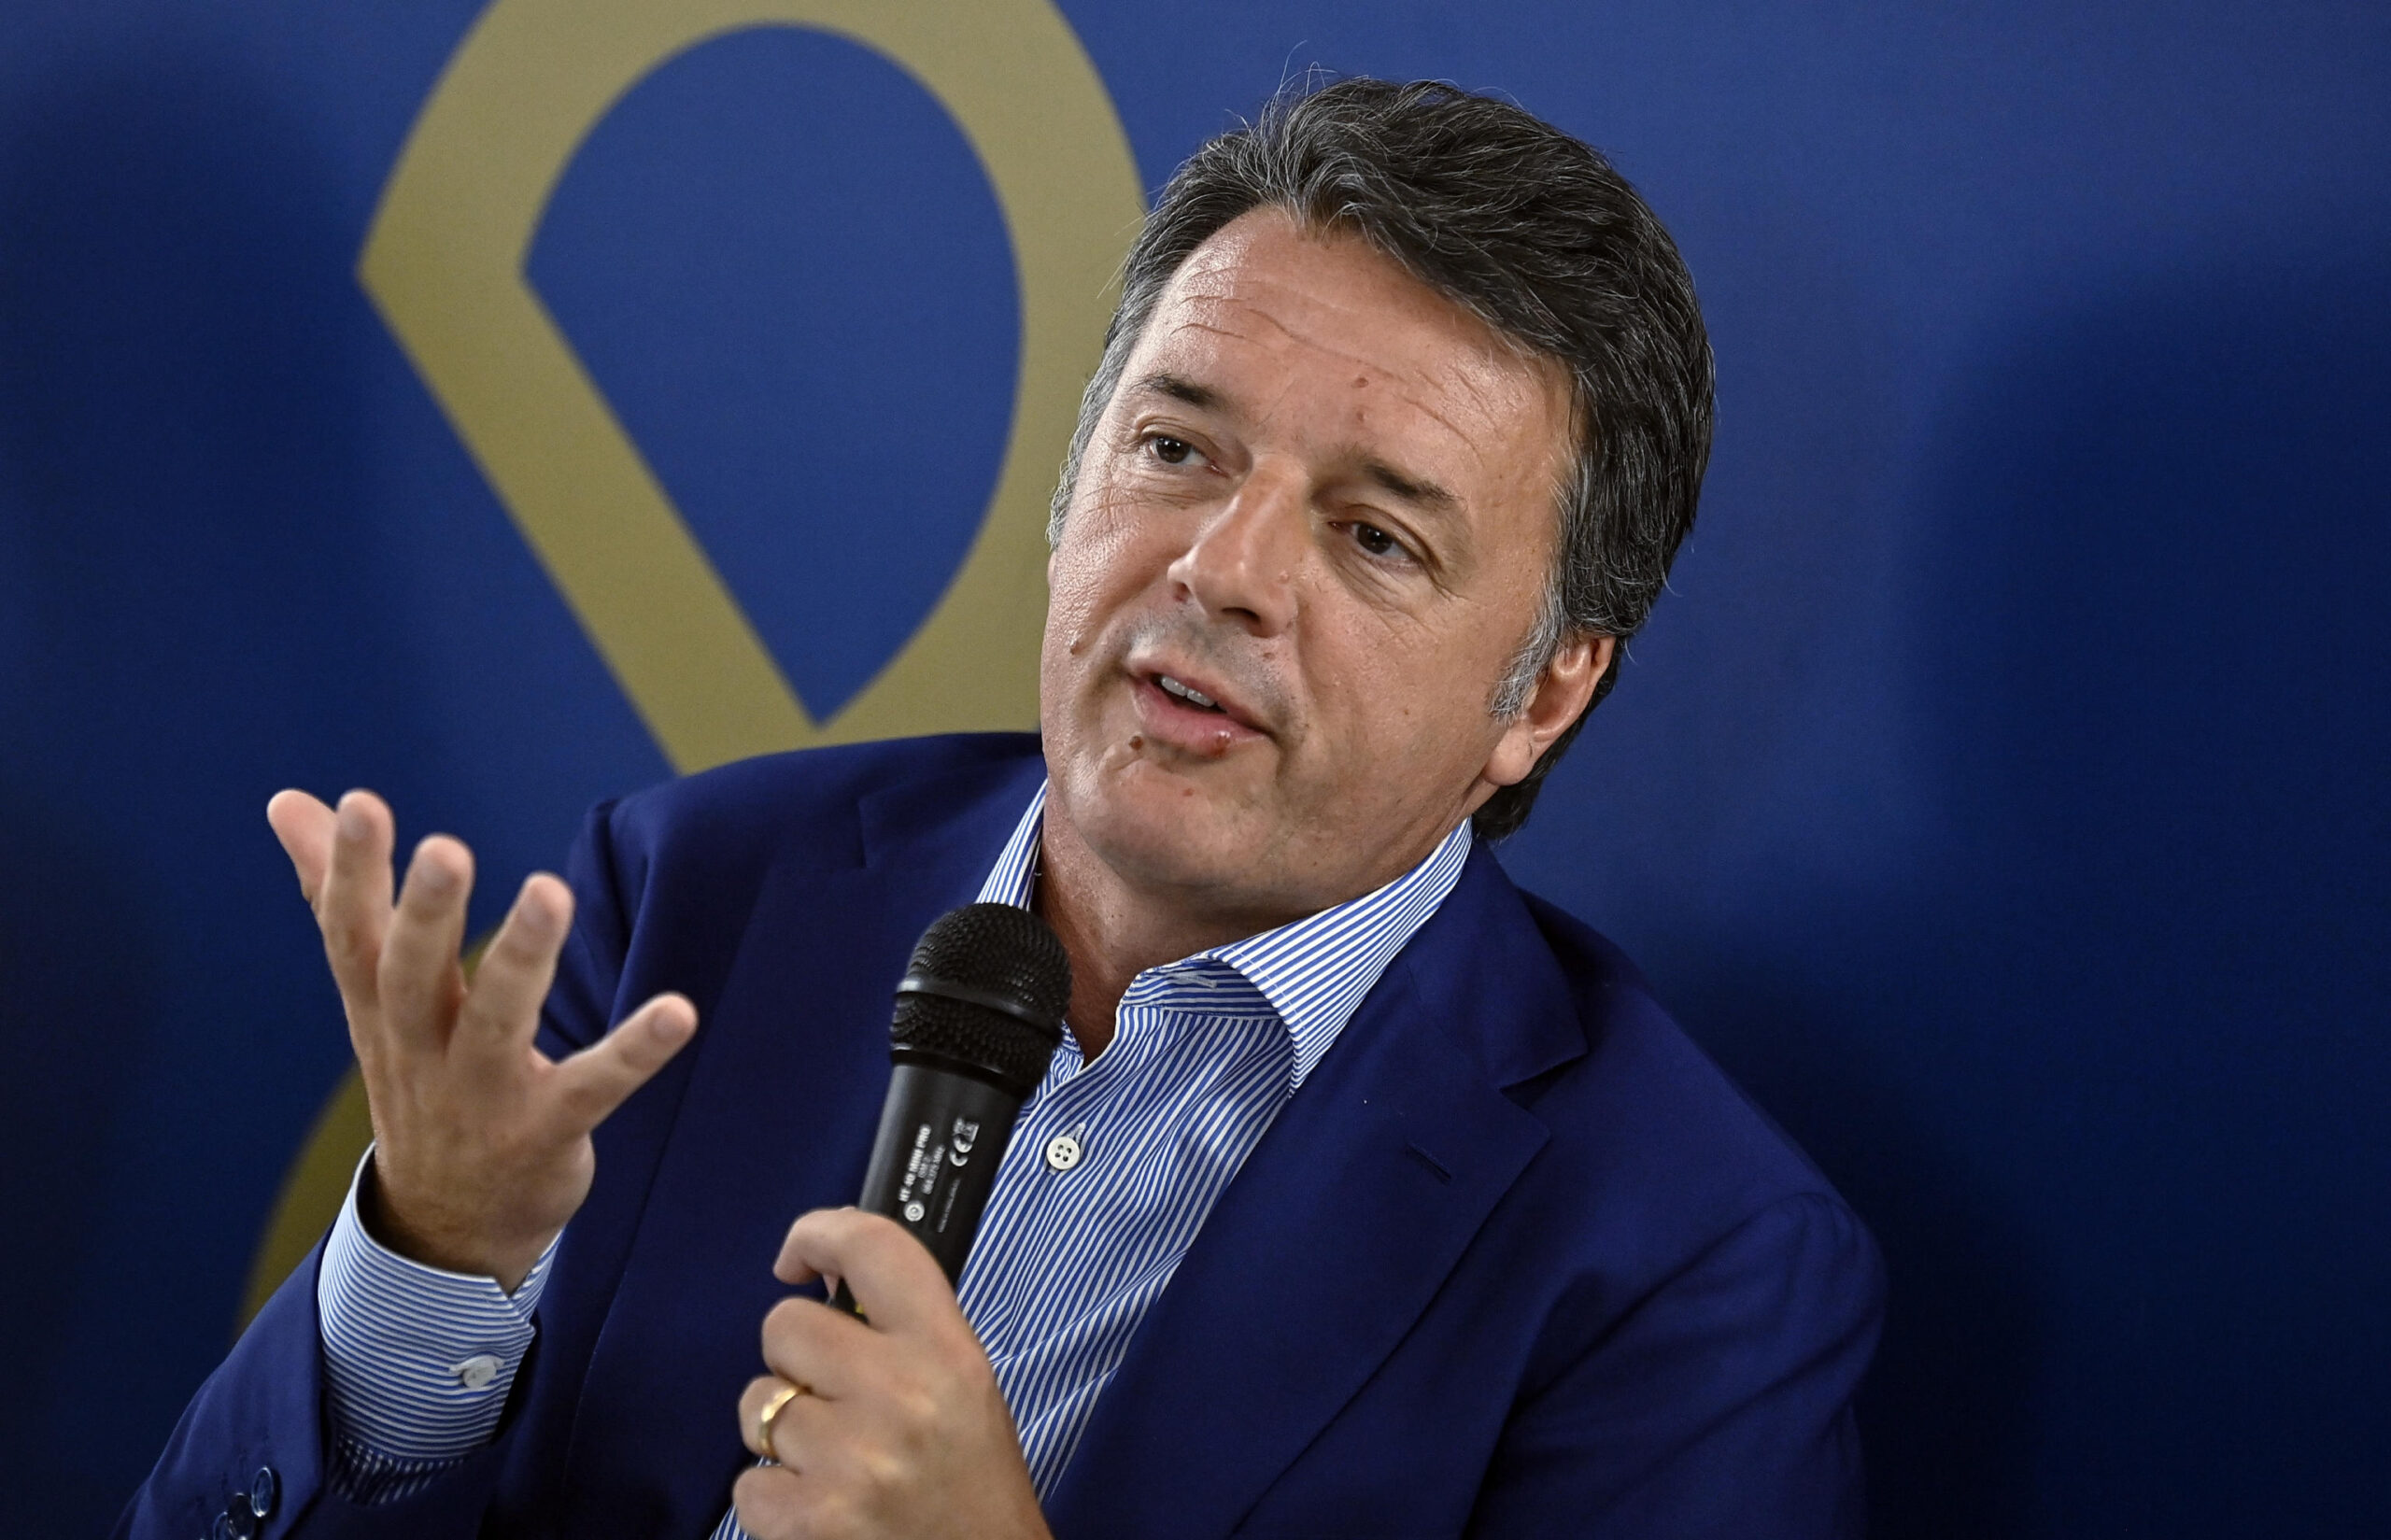 Europee, Renzi: "Von der Leyen non è una leader ma una follower delle ideologie che strizza l'occhio a Orban"